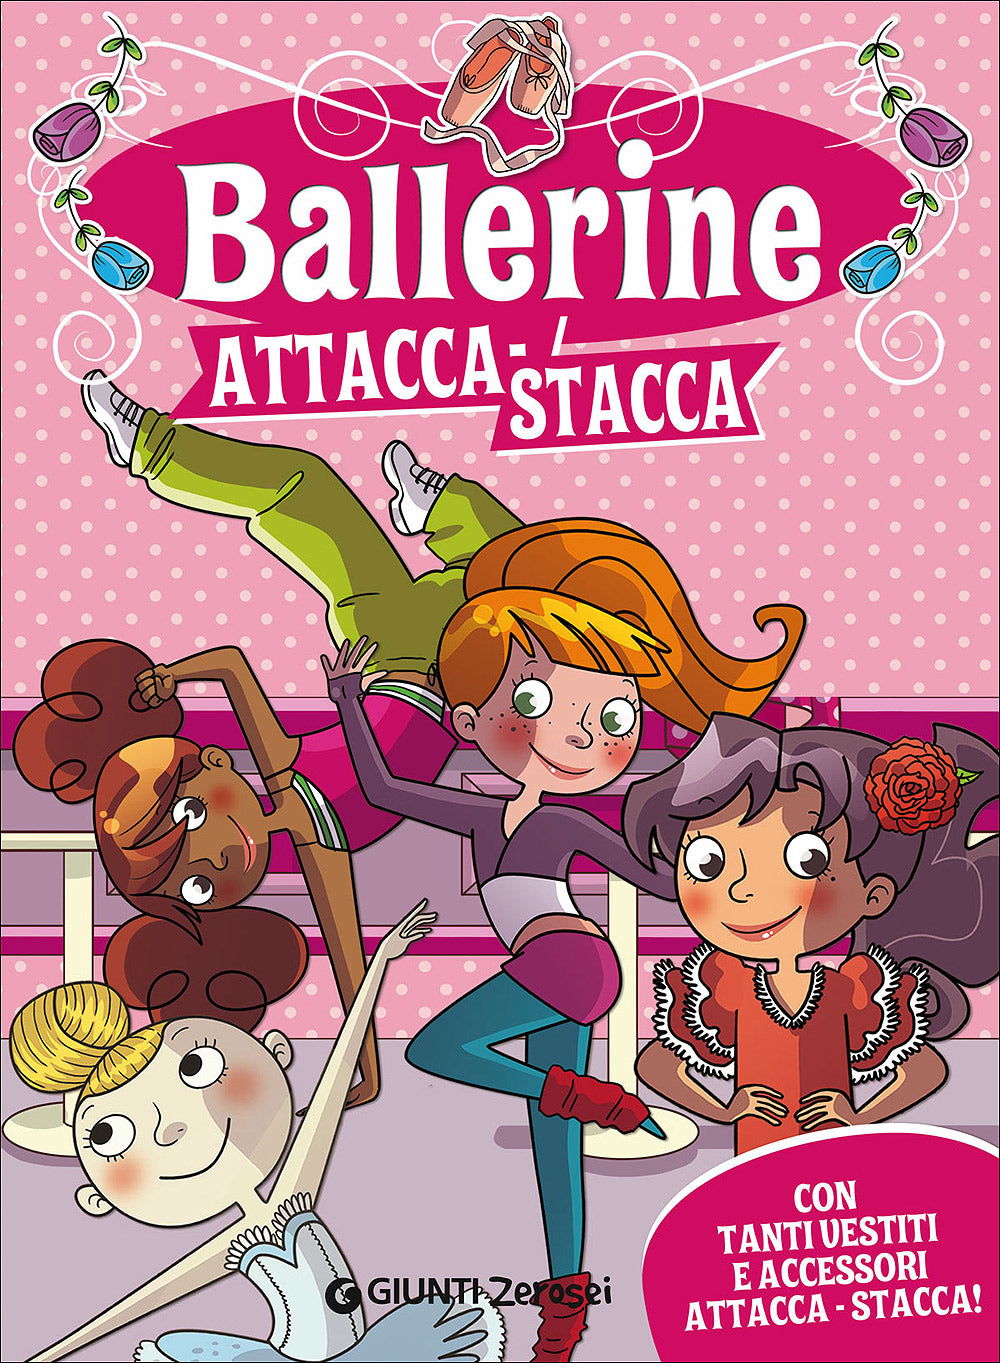 Ballerine attacca-stacca. Con tanti vestiti e accessori attacca-stacca!:  libro di Martina Boschi